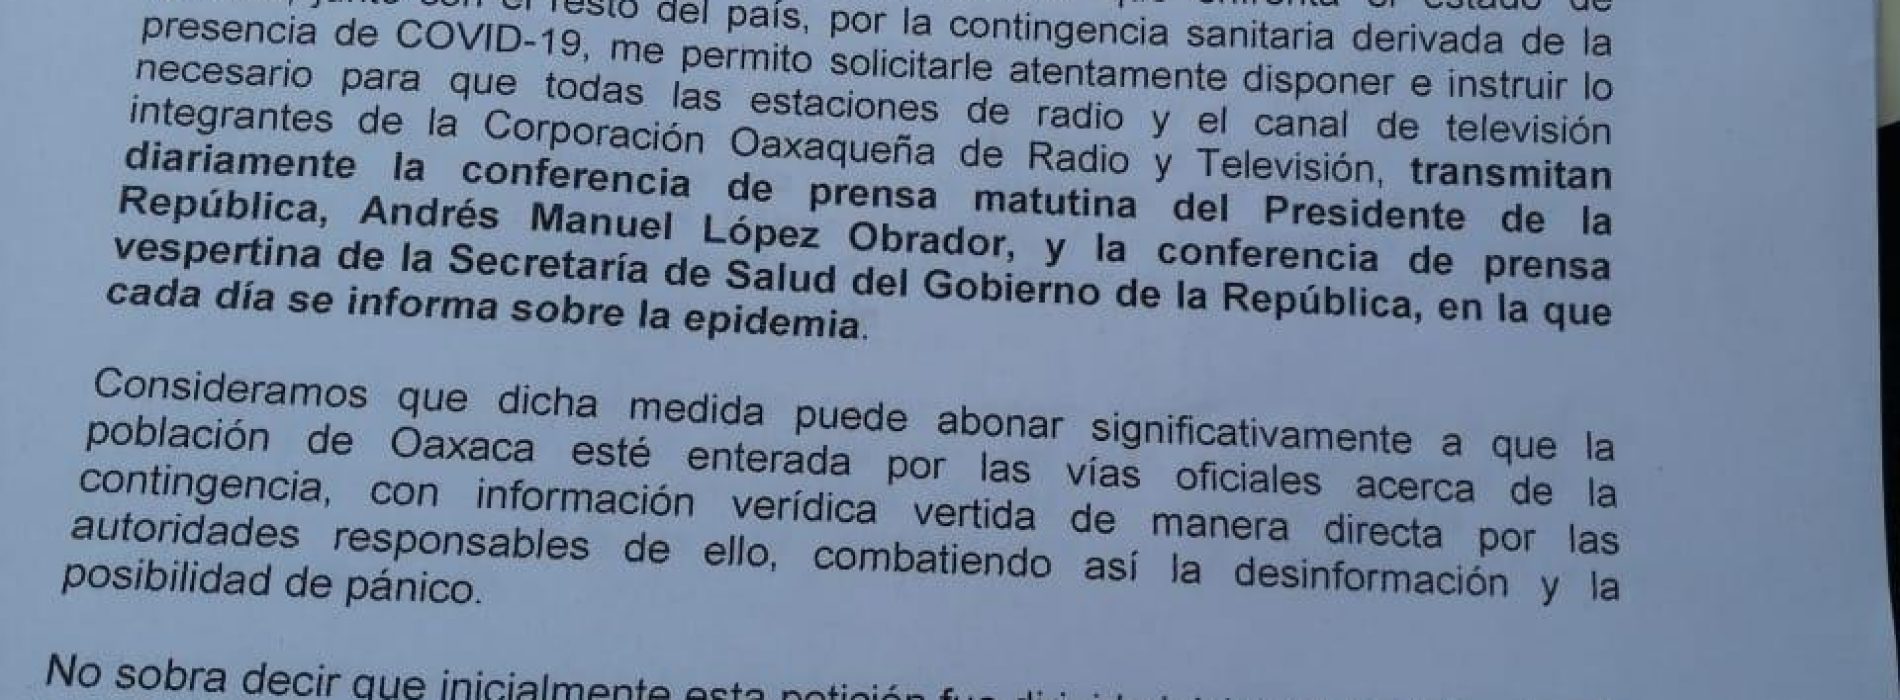 Medios institucionales de Oaxaca deben combatir desinformación ante contingencia sanitaria: Magaly López